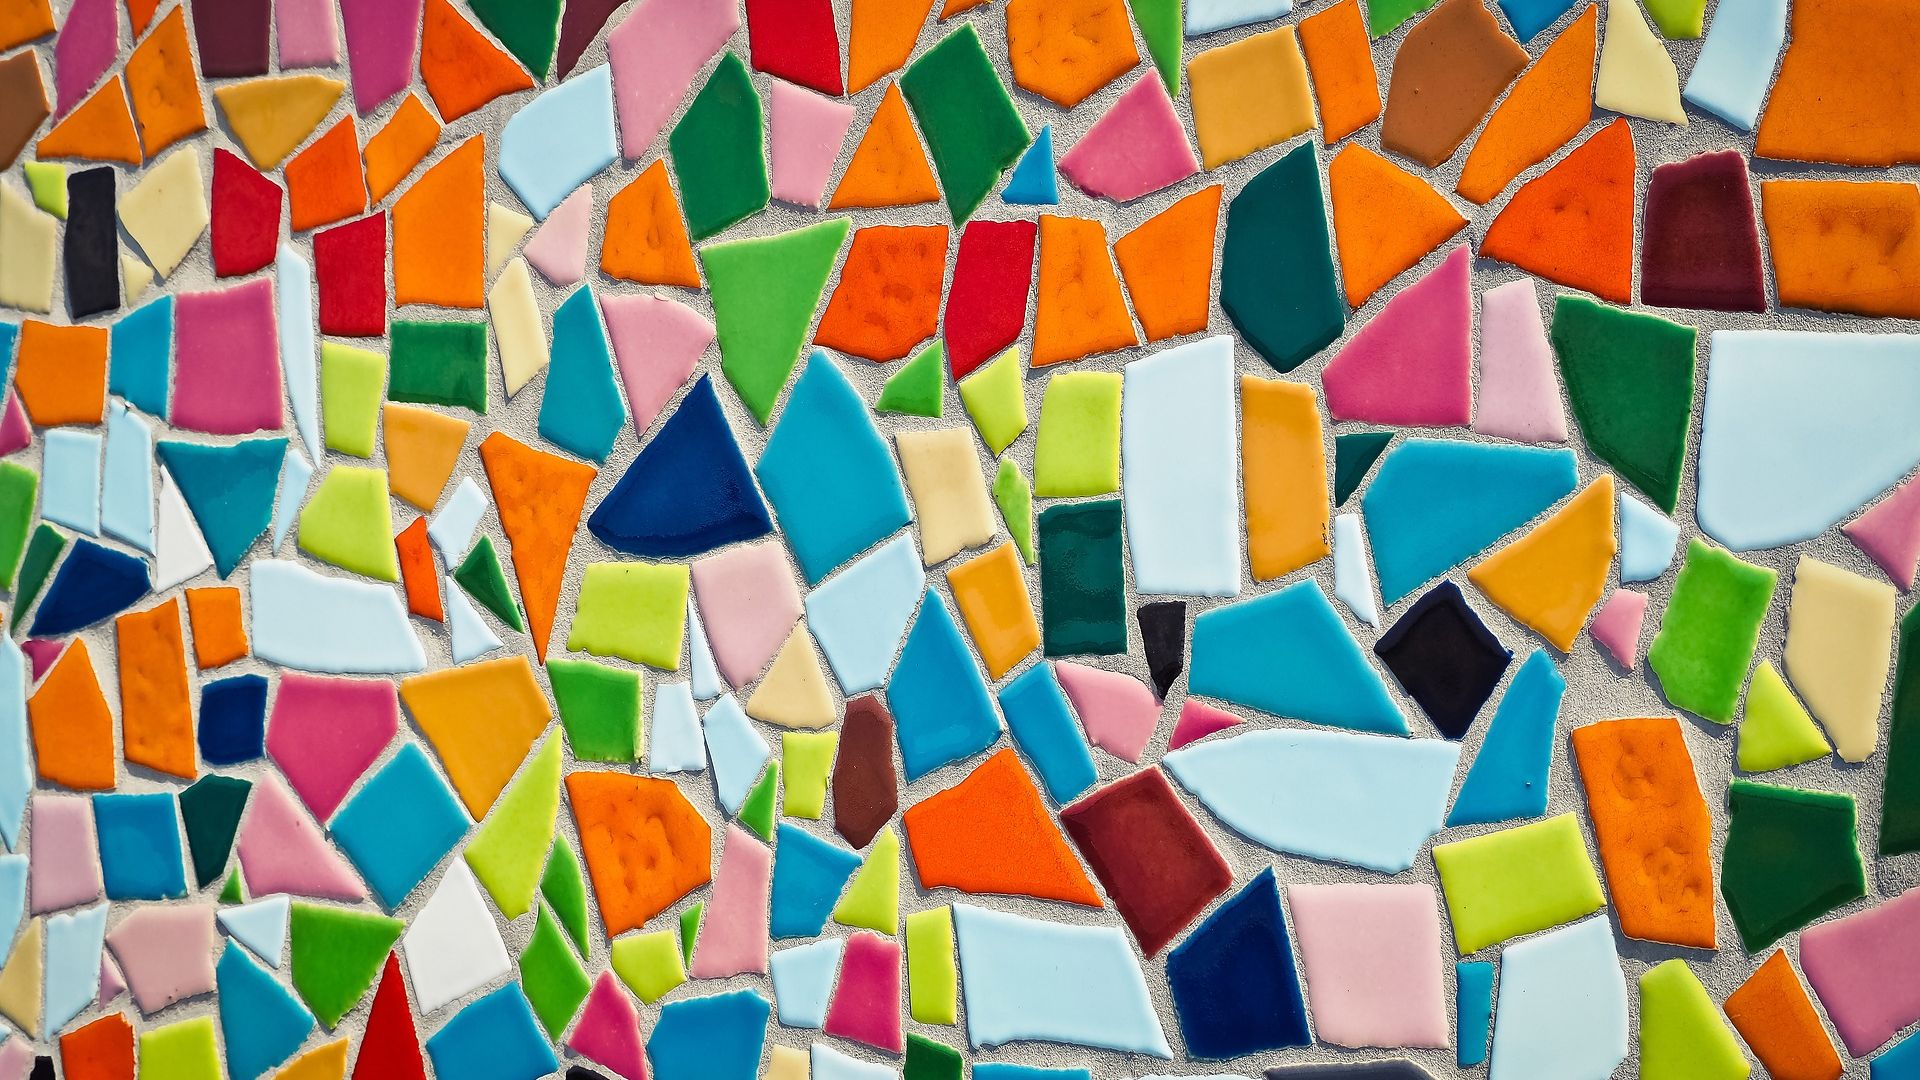 Abstract Art Mosaic Tiles Pattern Wallpaper Stream